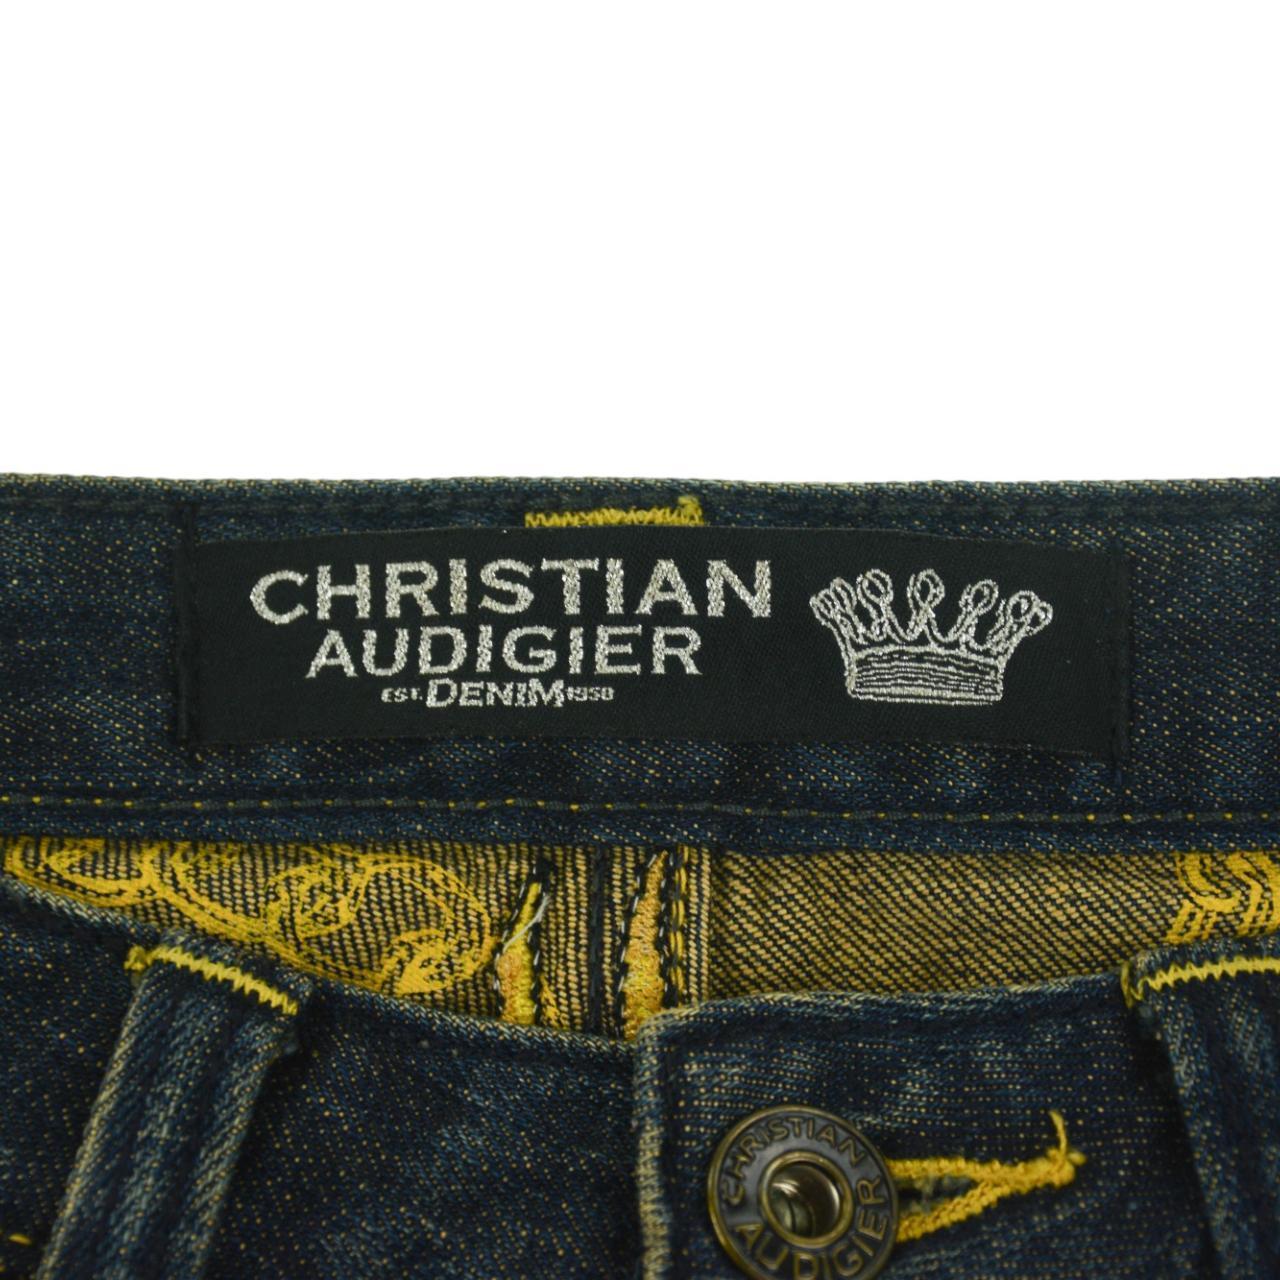 Vintage Christian Audigier Jaguar Denin Jeans Size W30 - Known Source